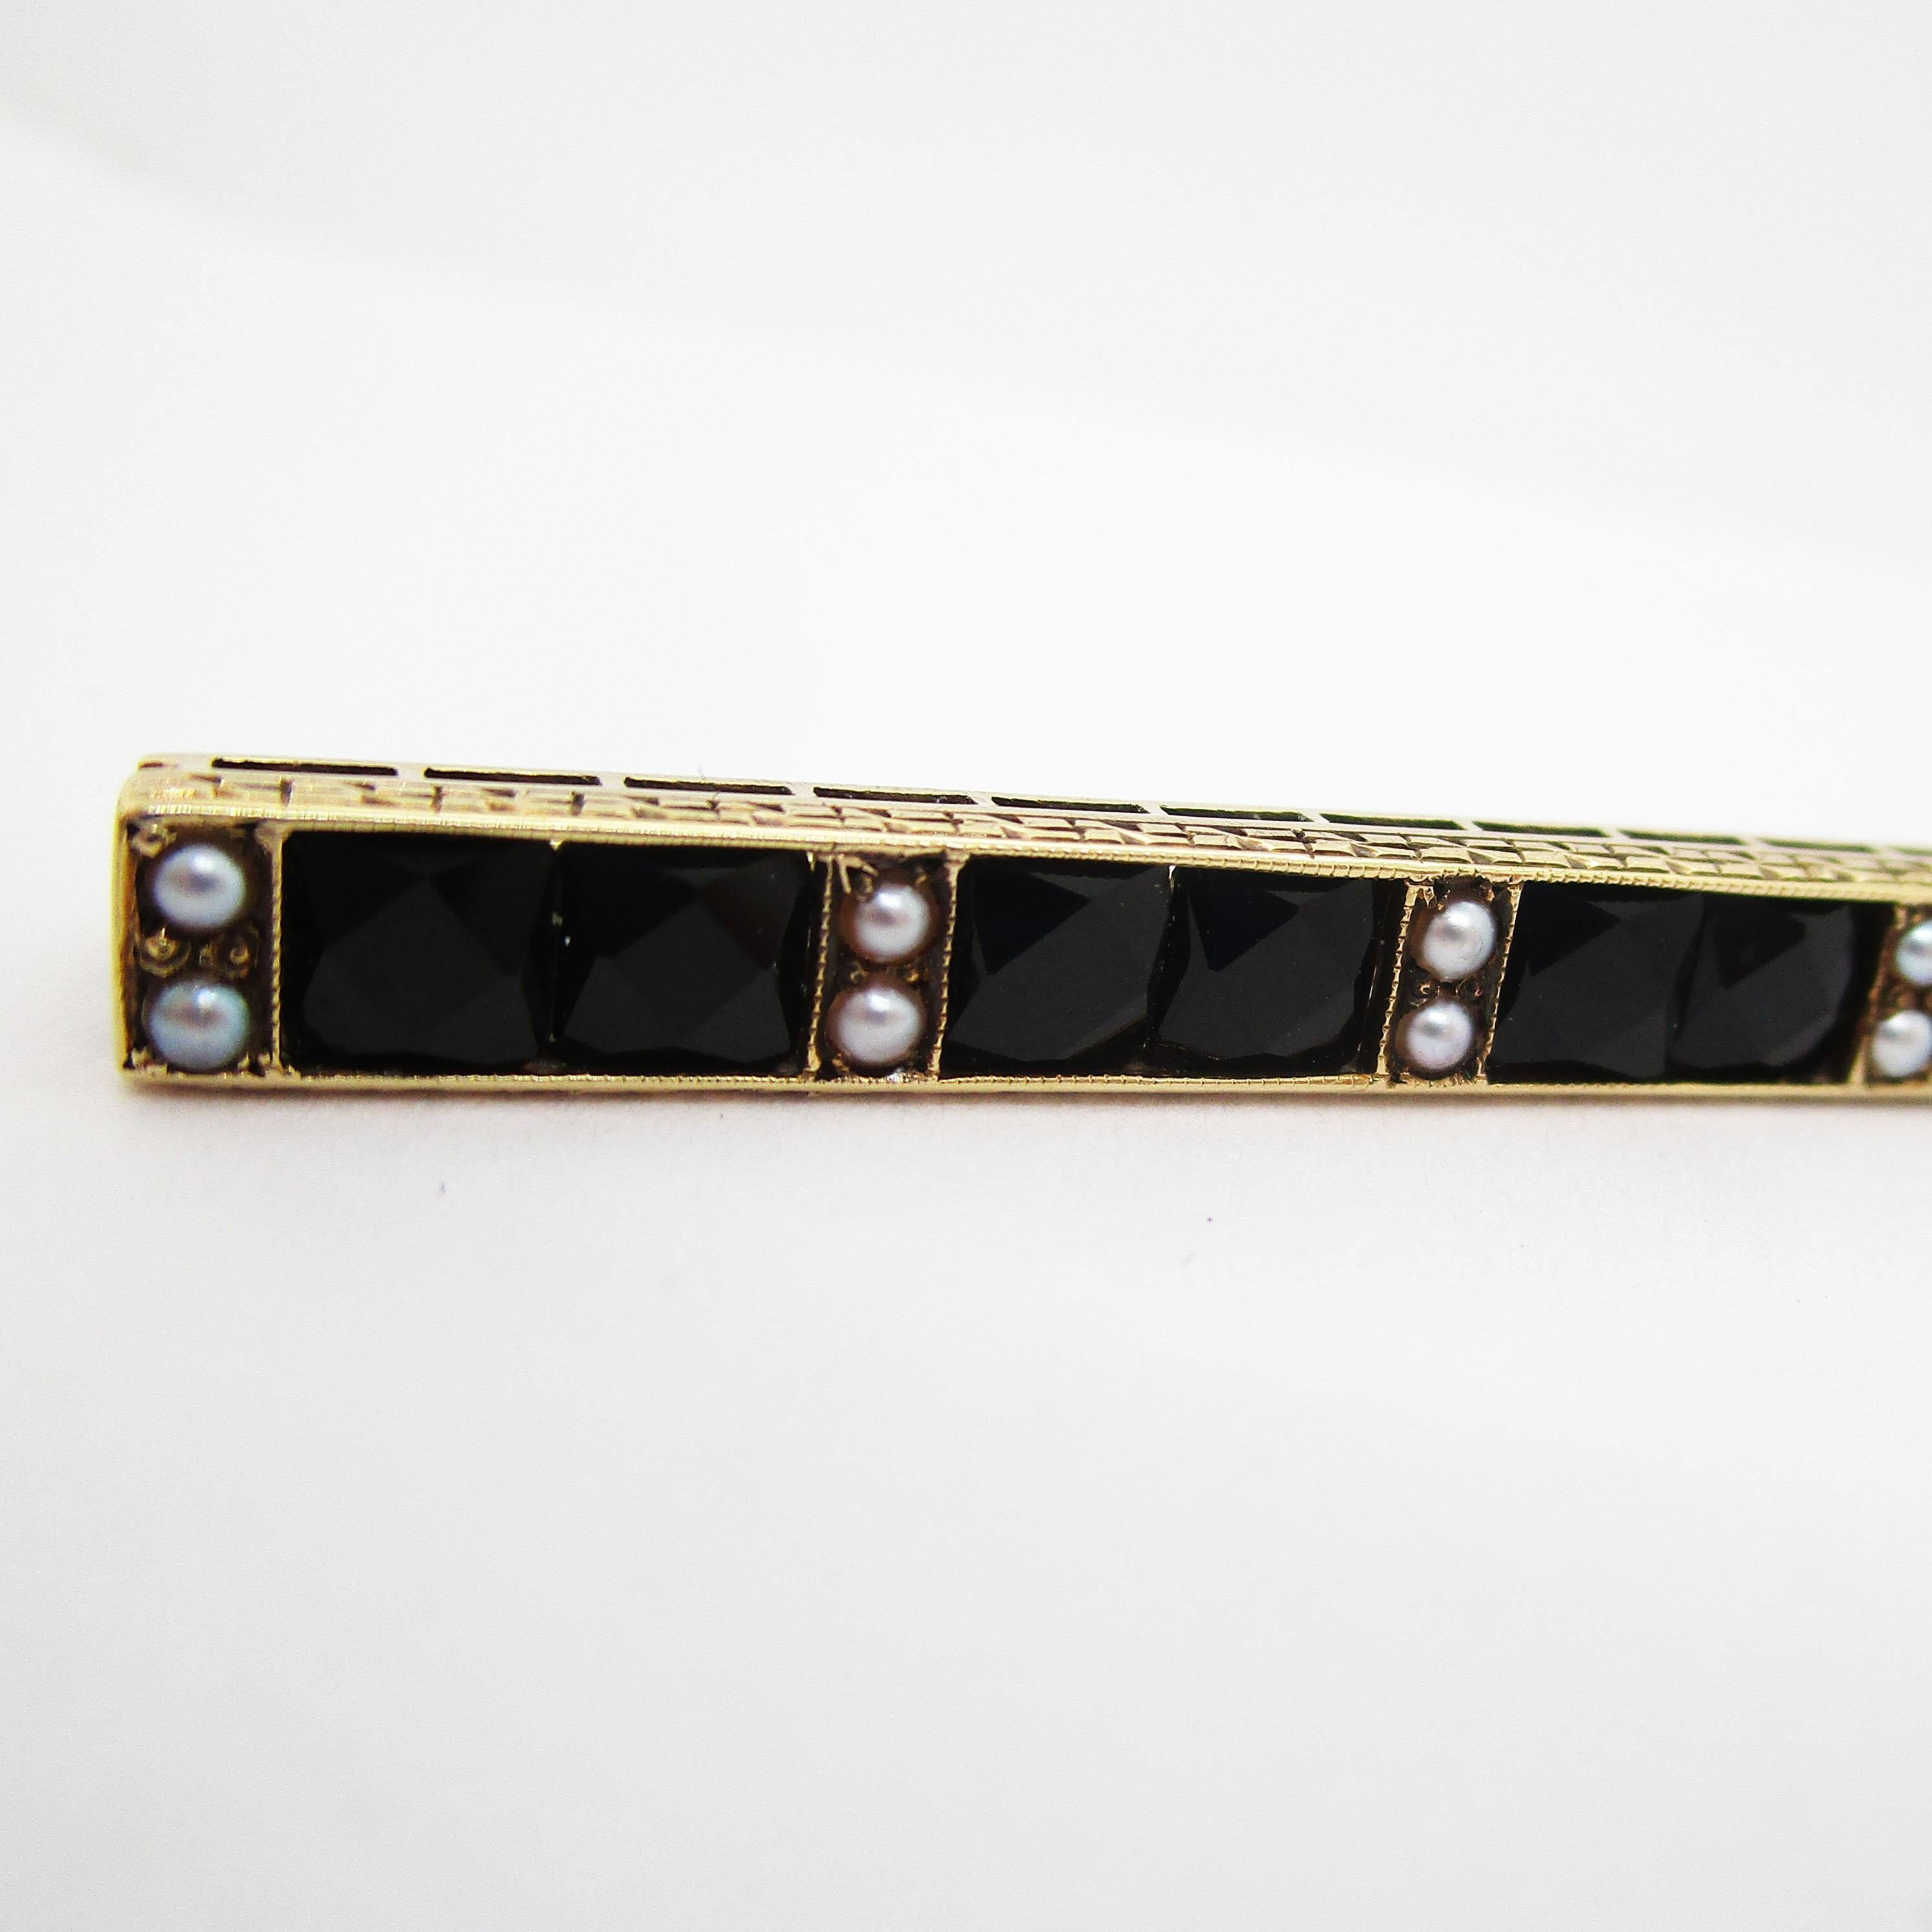 Il s'agit d'une superbe épingle de bar Art Déco de 1915 par Sloan & Co. Elle présente une combinaison fantastique d'onyx noir de taille française, de perles de rocaille et d'or jaune 14k. La combinaison spectaculaire d'onyx noir géométrique à